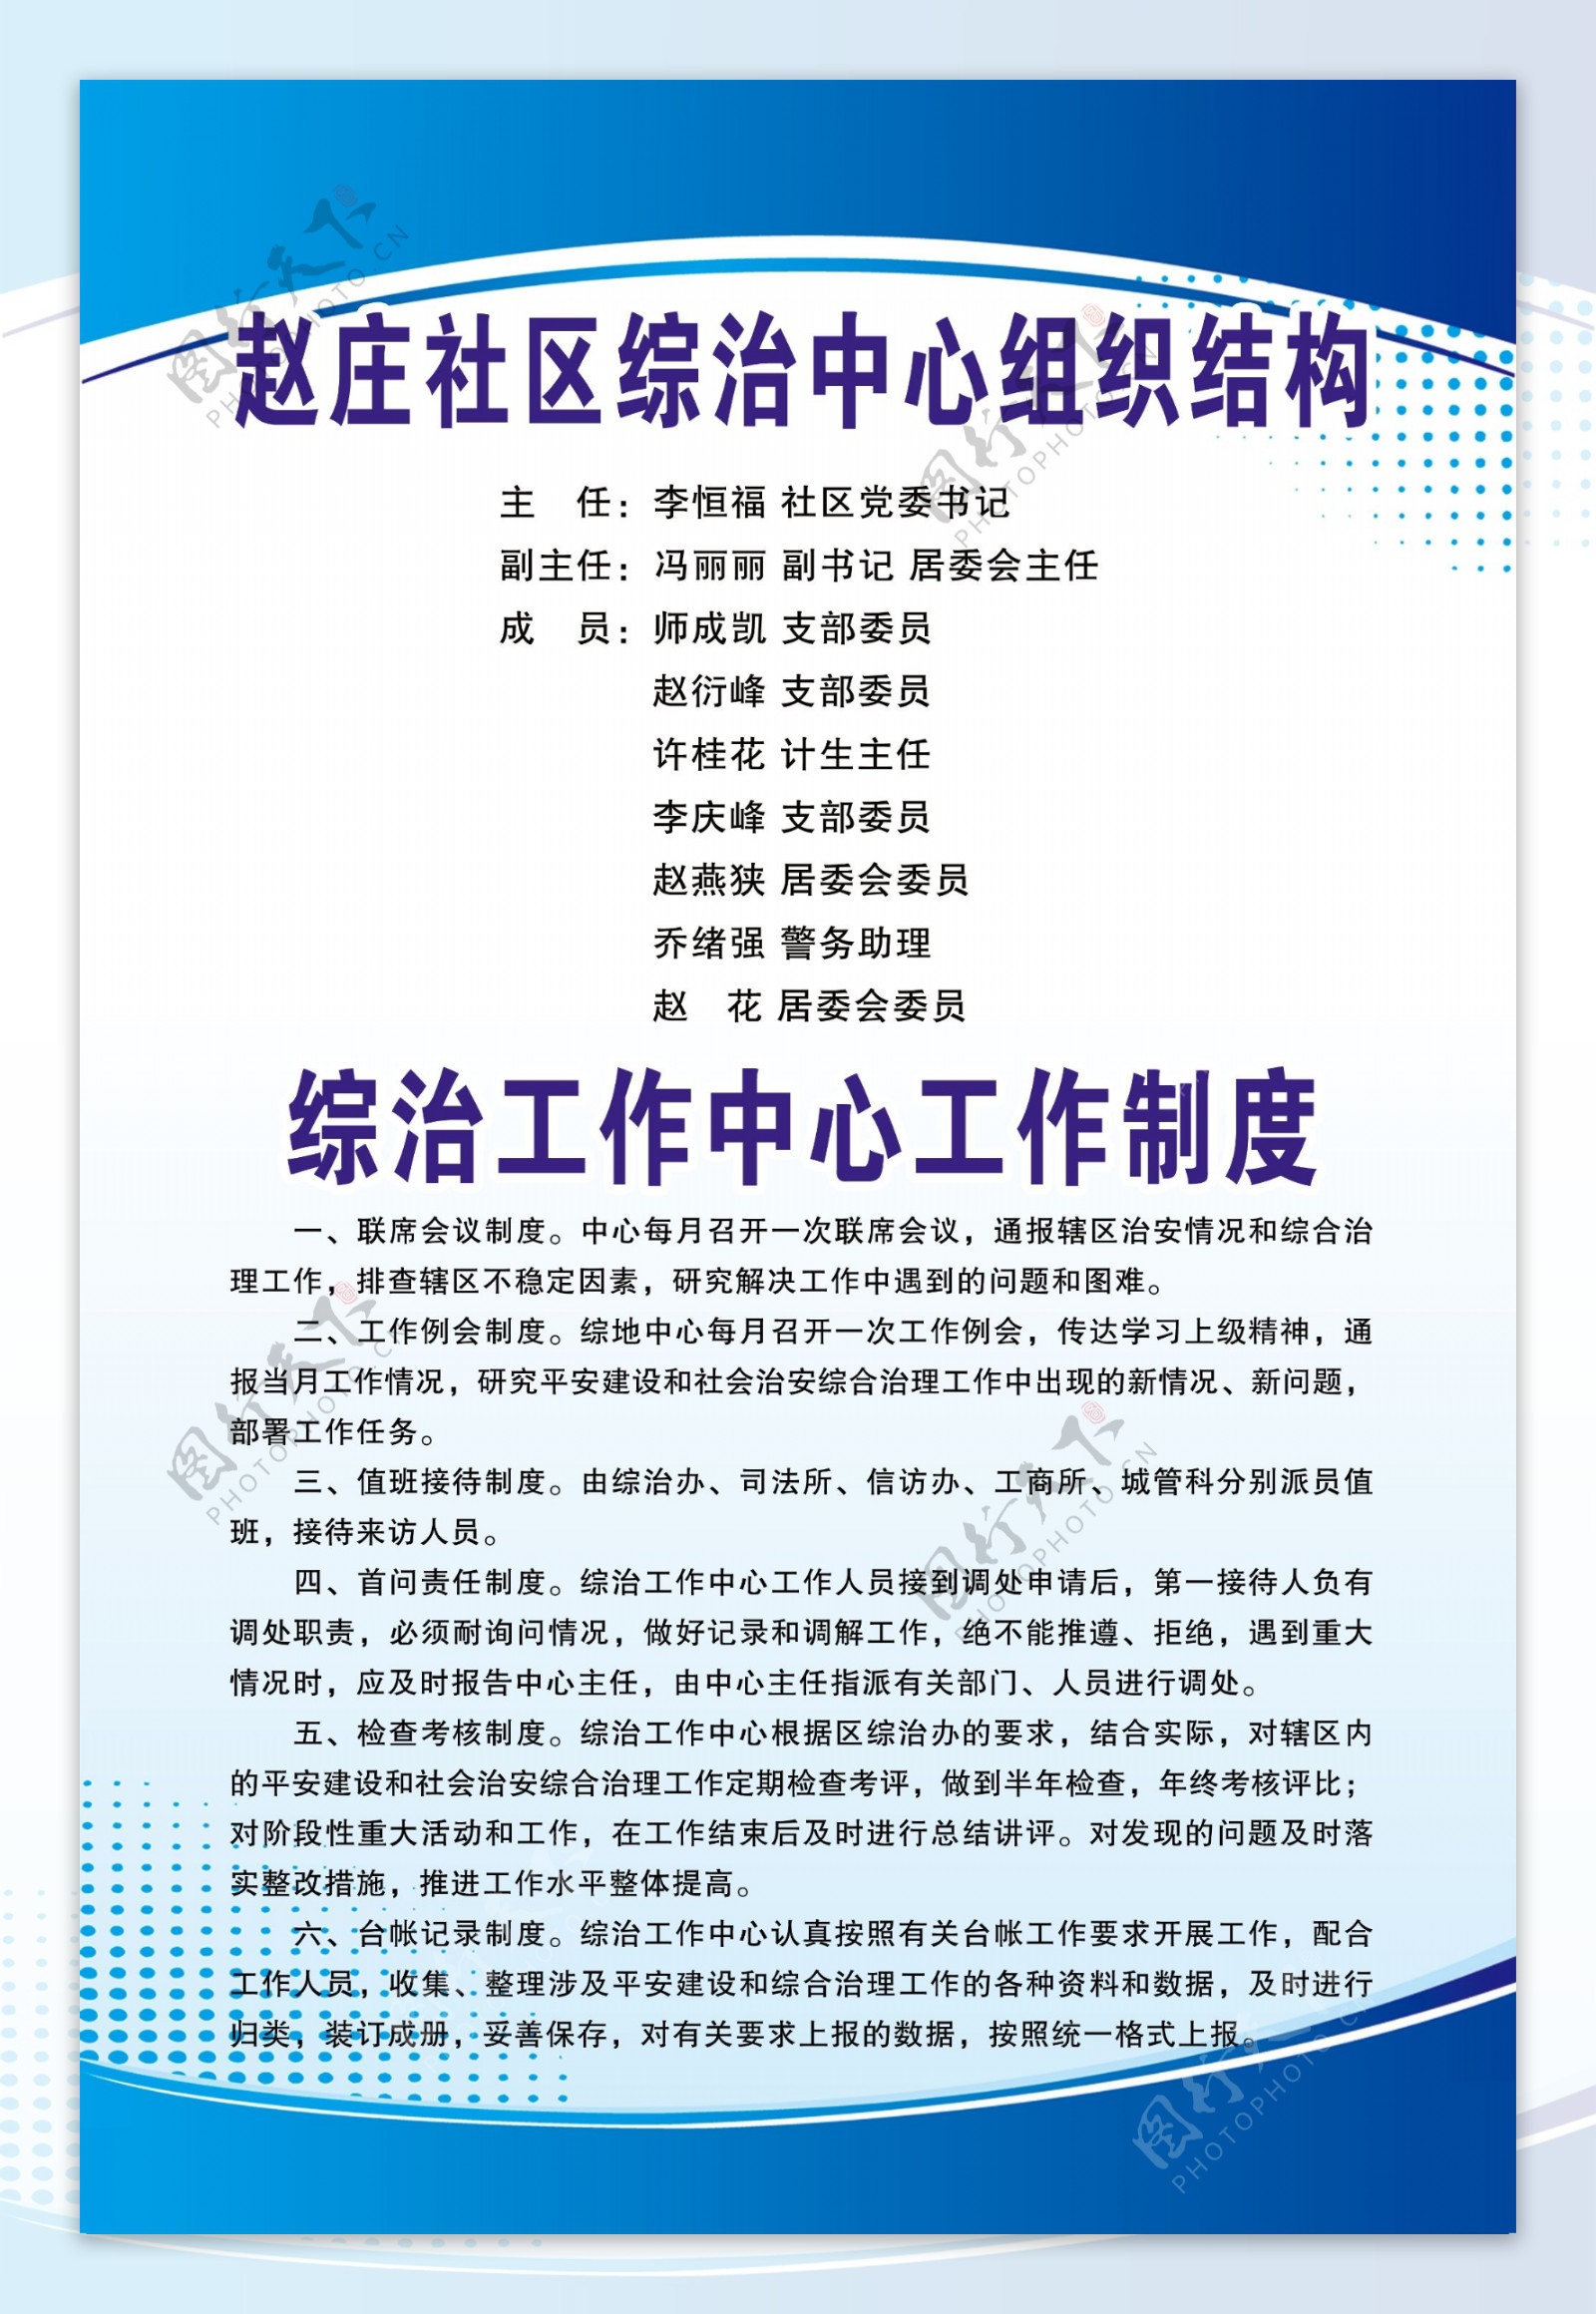 赵庄社区综治中心组织结构